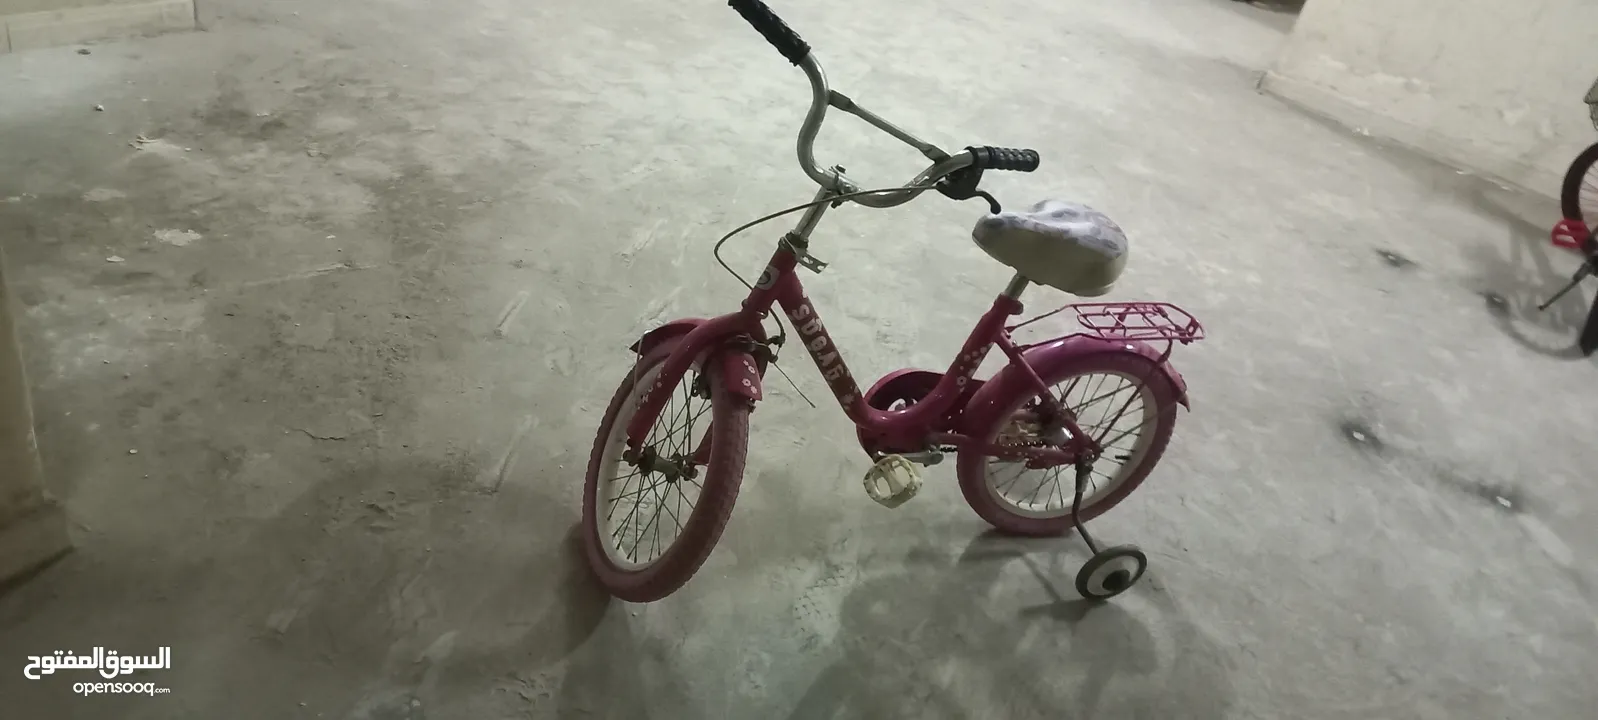 عجل دراجة اطفال مستعملة